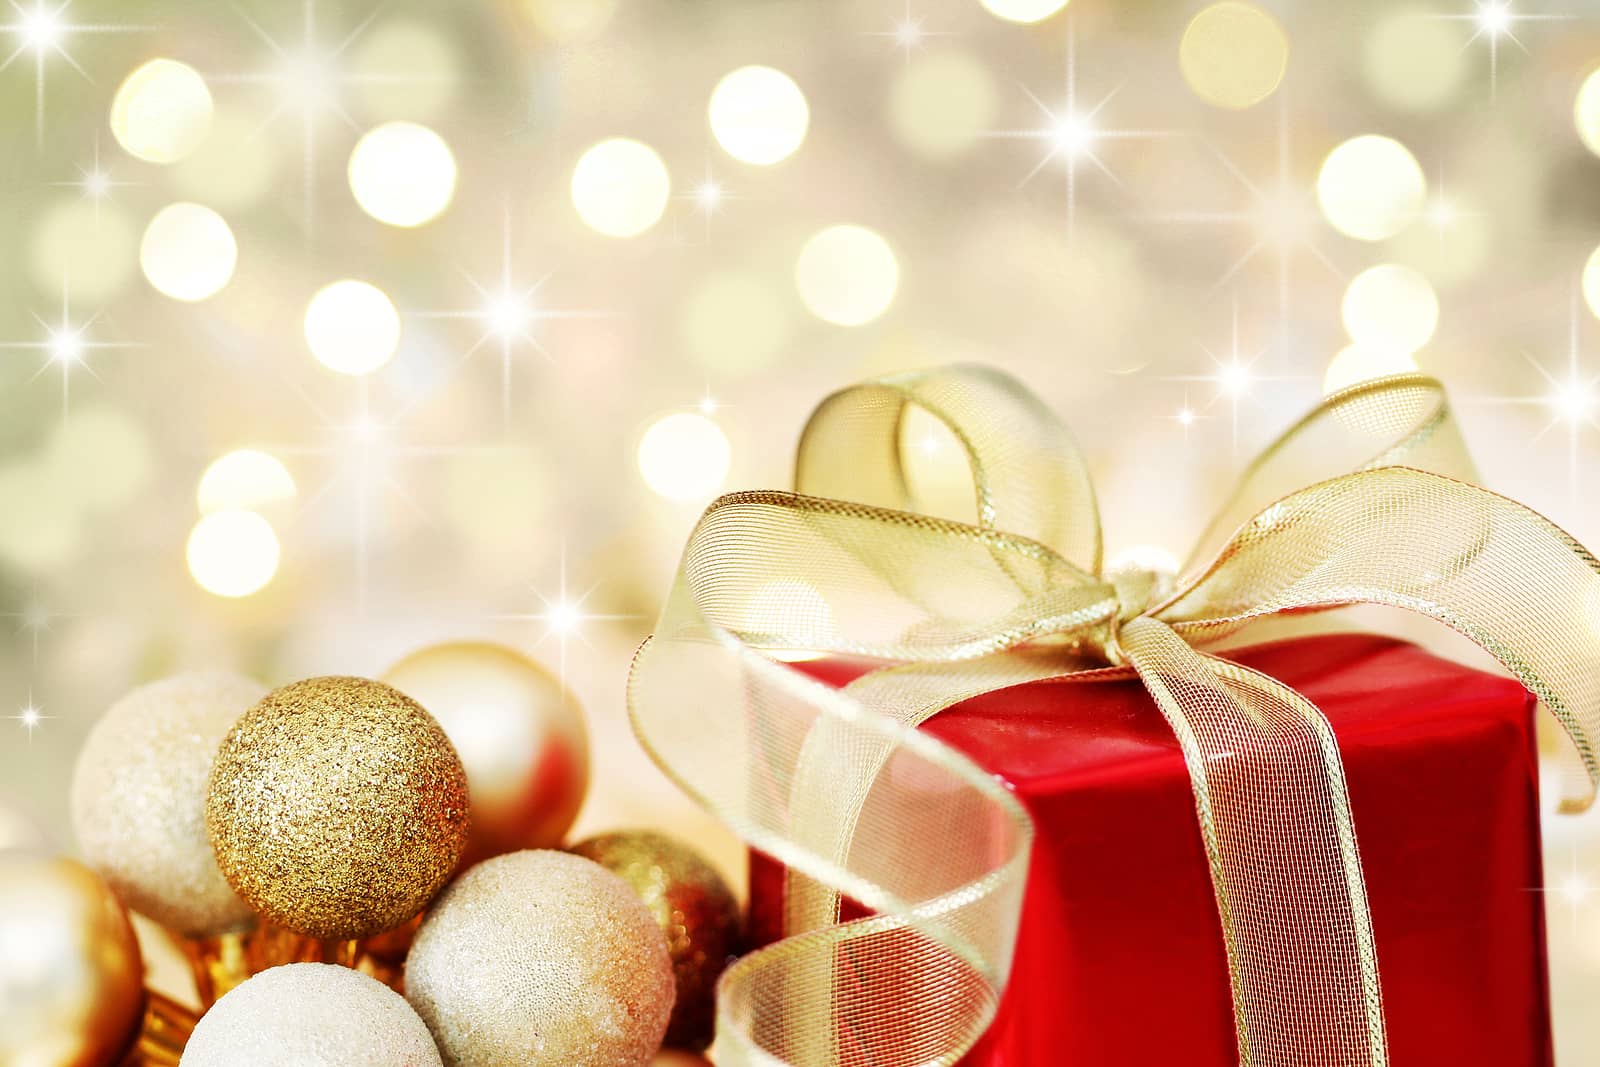 https://www.mashvisor.com/blog/wp-content/uploads/2020/11/20-Best-Christmas-Gifts-for-Real-Estate-Investors.jpg